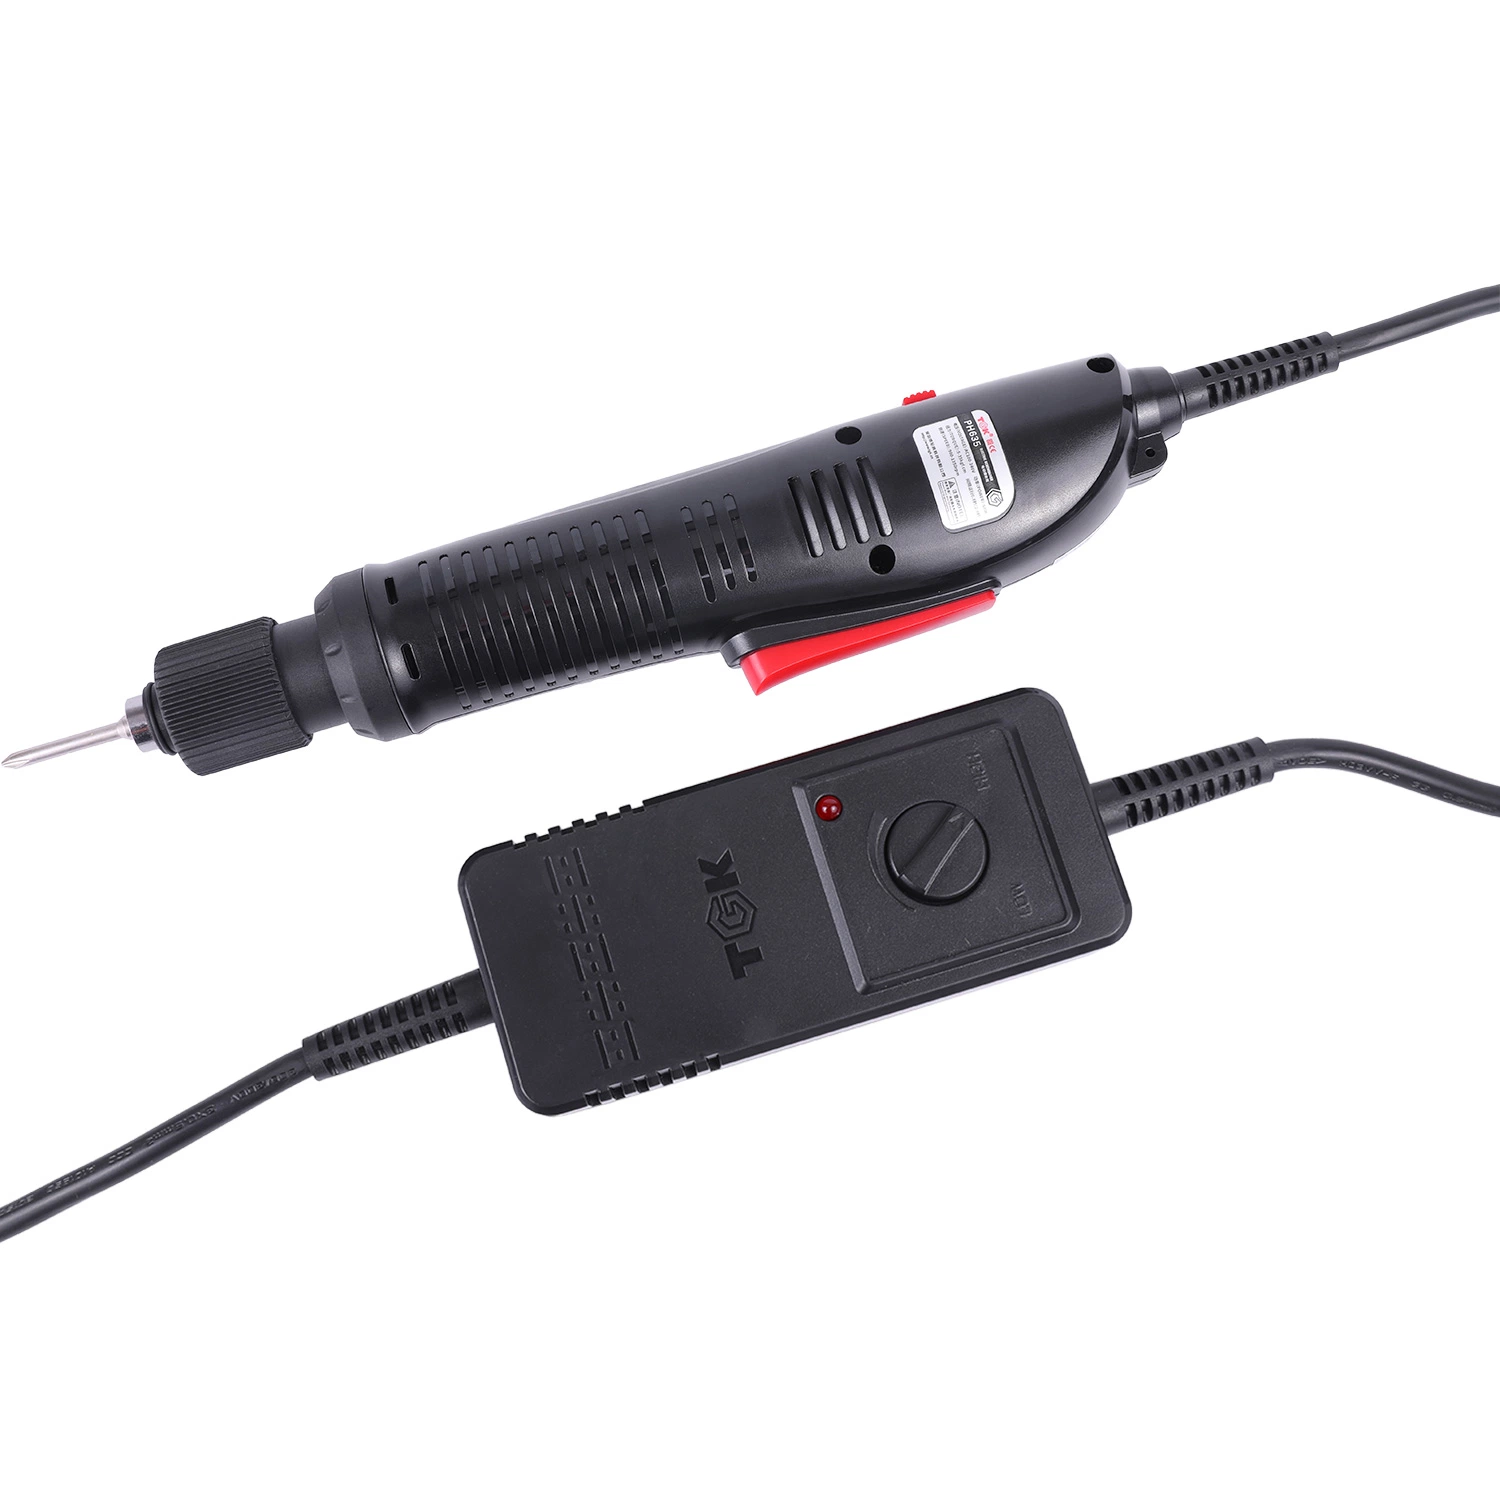 Destornillador eléctrico general herramienta ayuda a pequeños dispositivos electrónicos, alrededor de la casa PS635